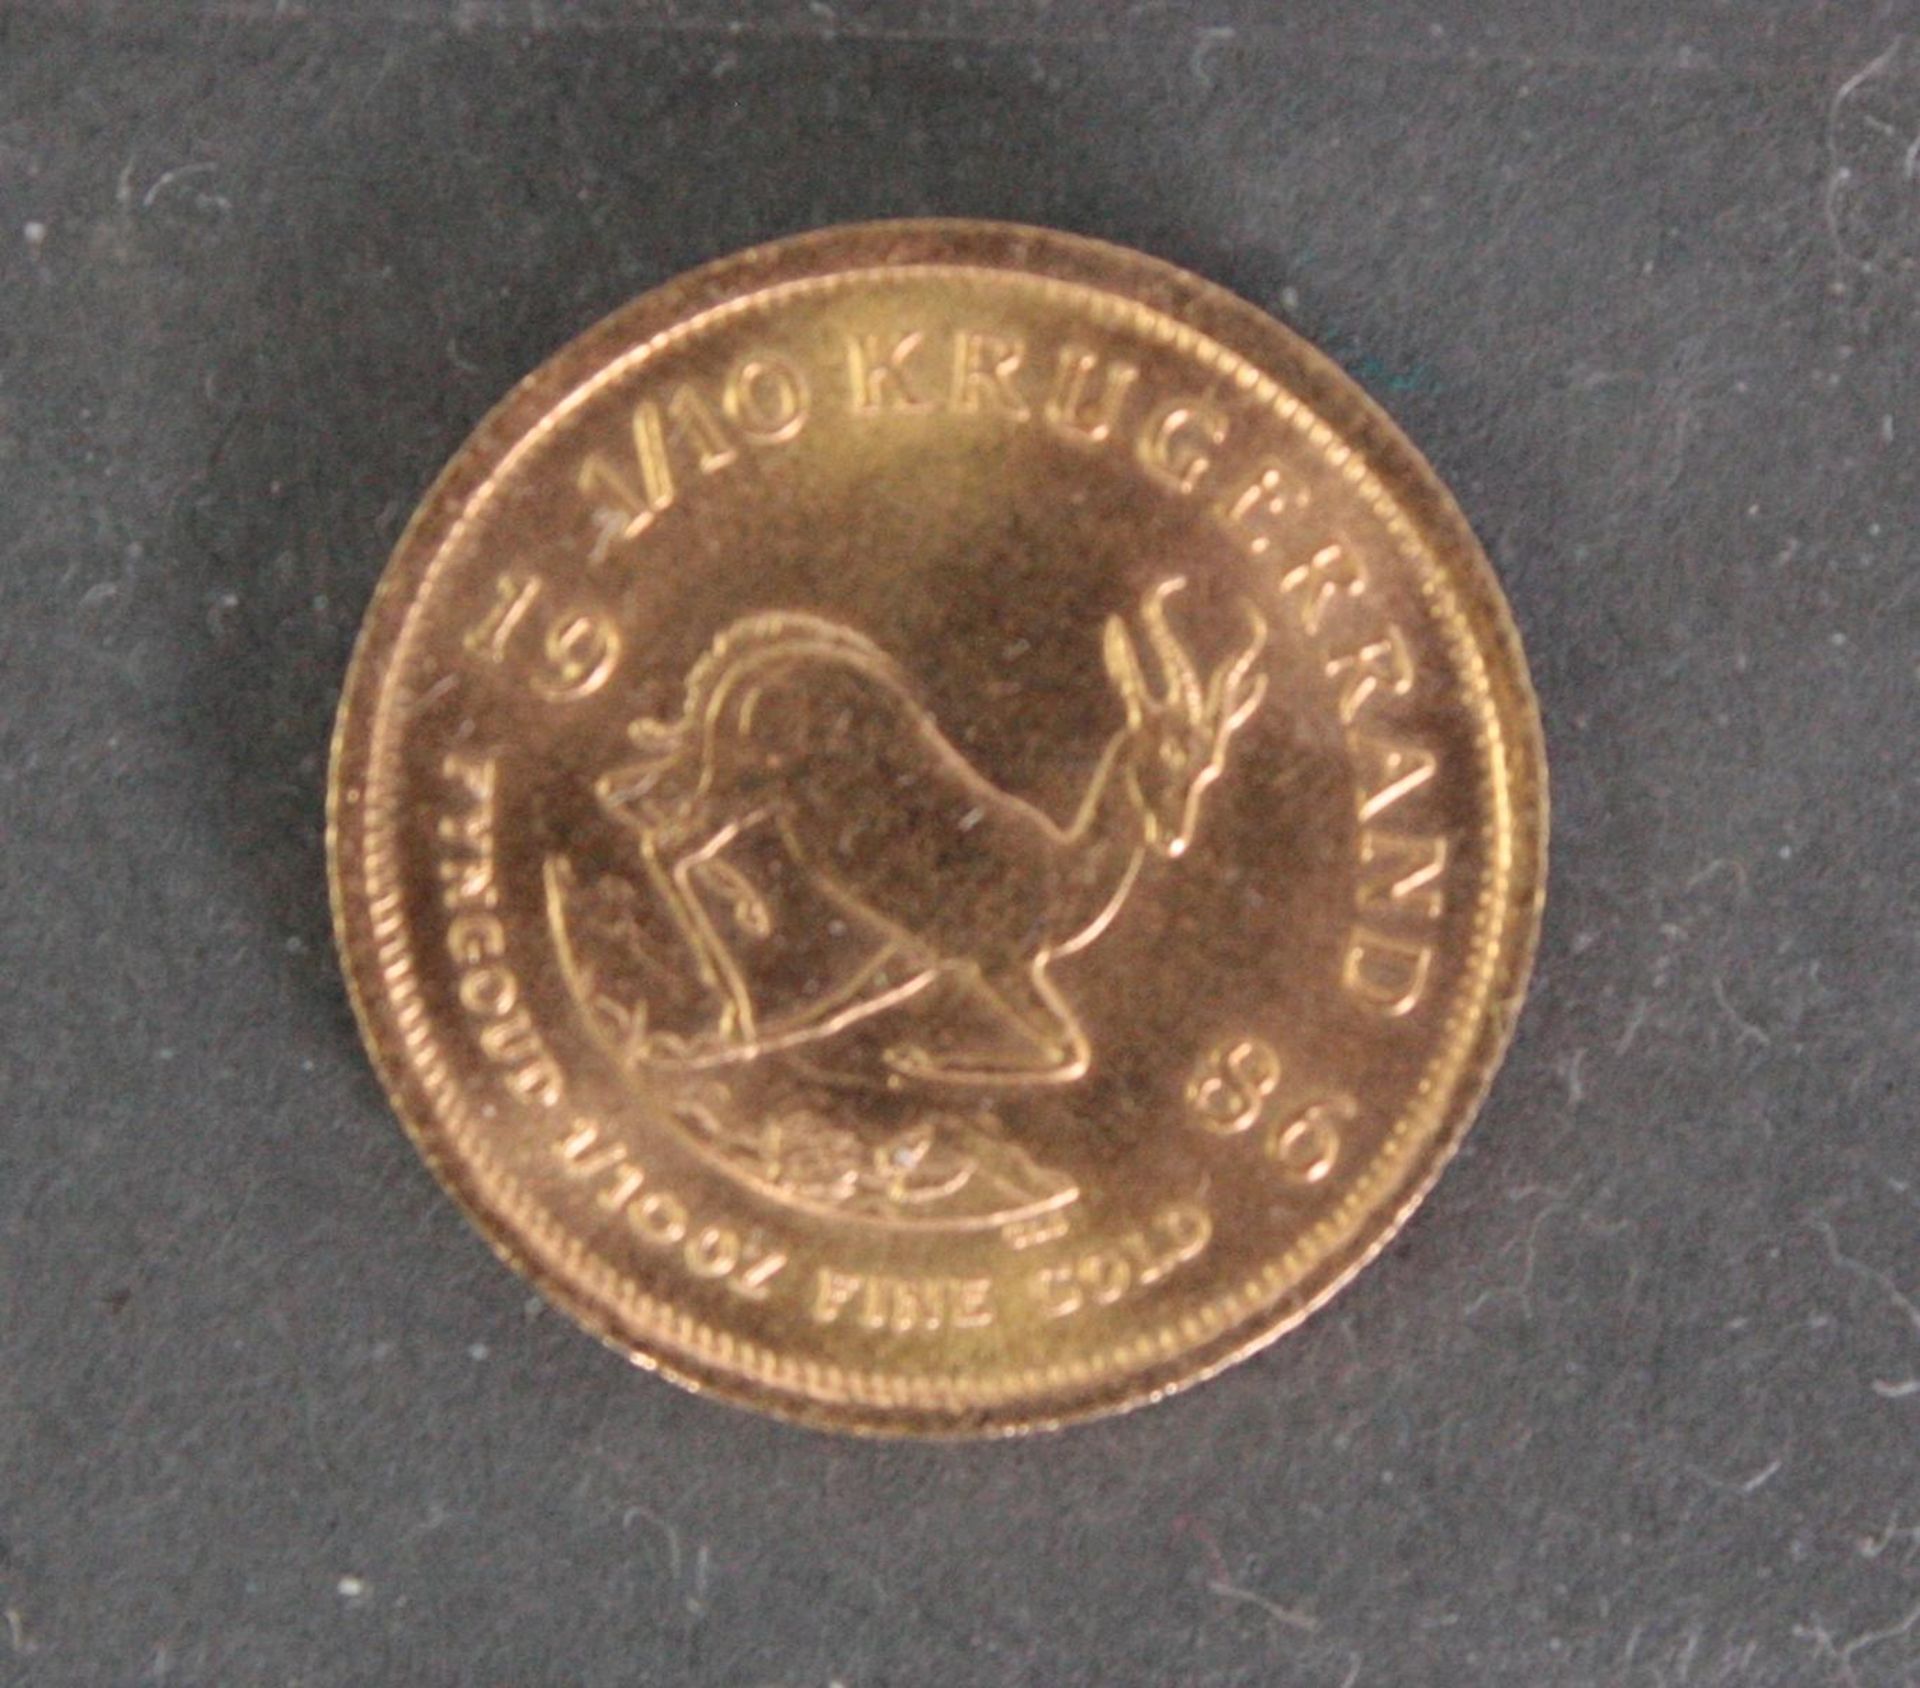 1/10 Krügerrand Münze 1986Durchmesser ca. 16,3 mm, 3,4 g - Bild 2 aus 2